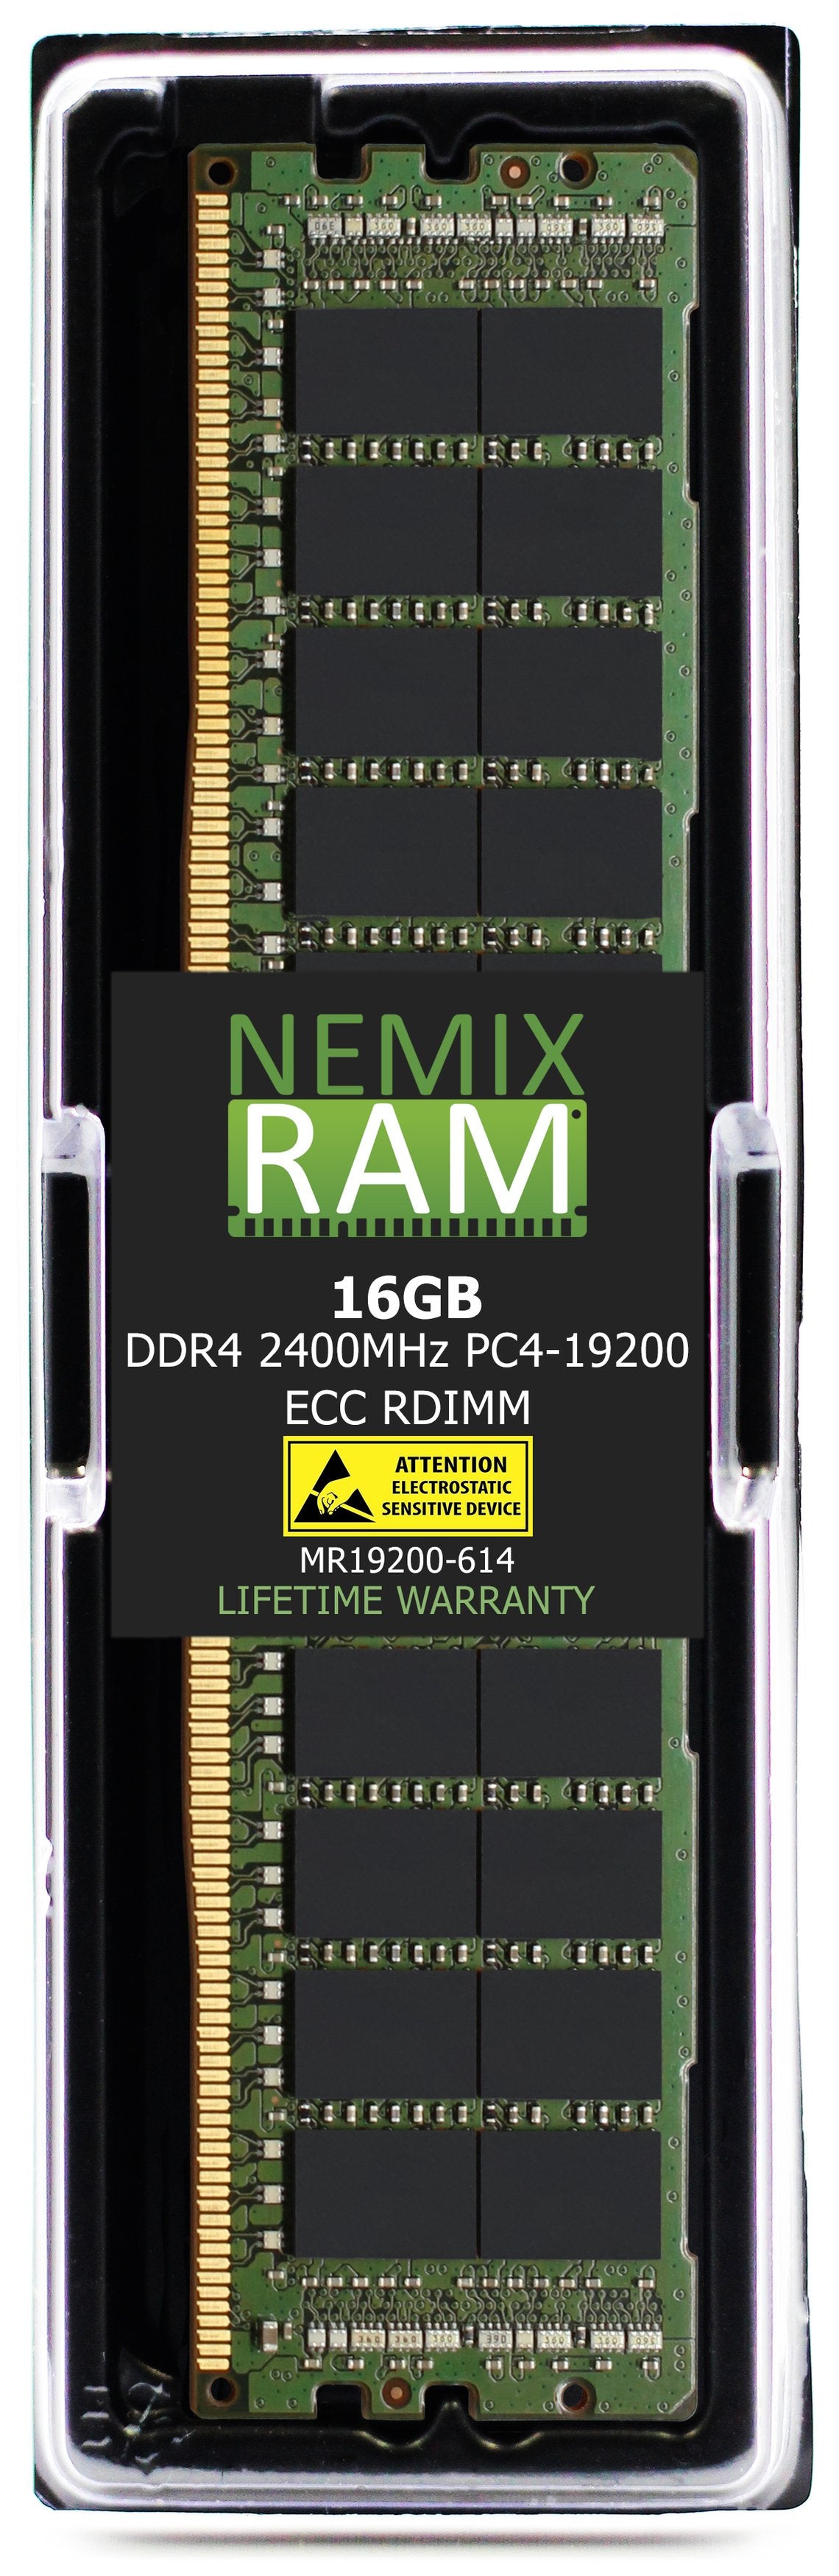 16GB DDR4 2400MHZ PC4-19200 RDIMM Compatible with Supermicro MEM-DR416L-CL03-ER24